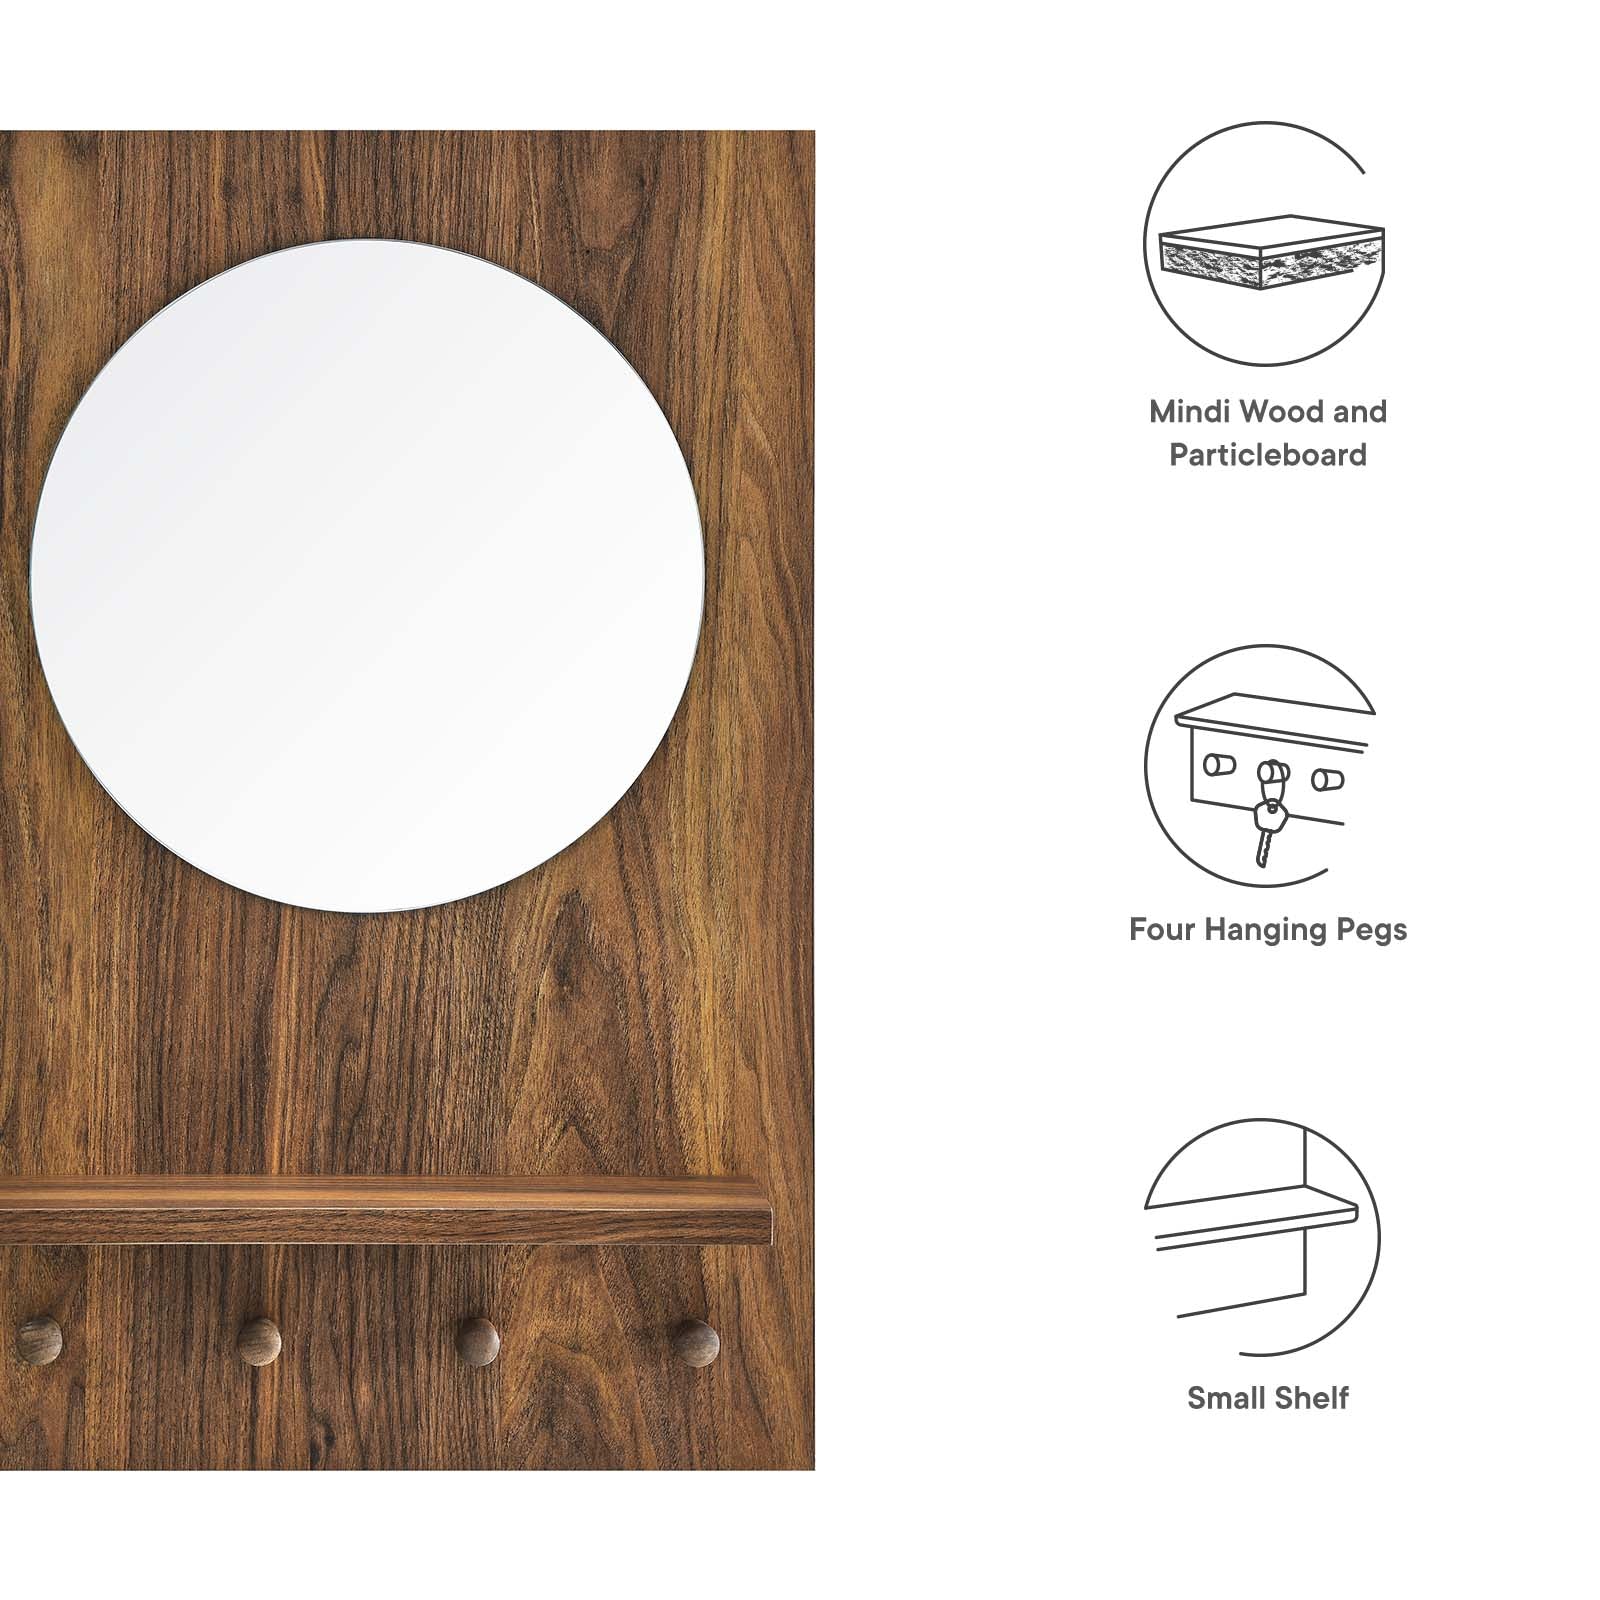 Glint Mirror-Mirror-Modway-Wall2Wall Furnishings